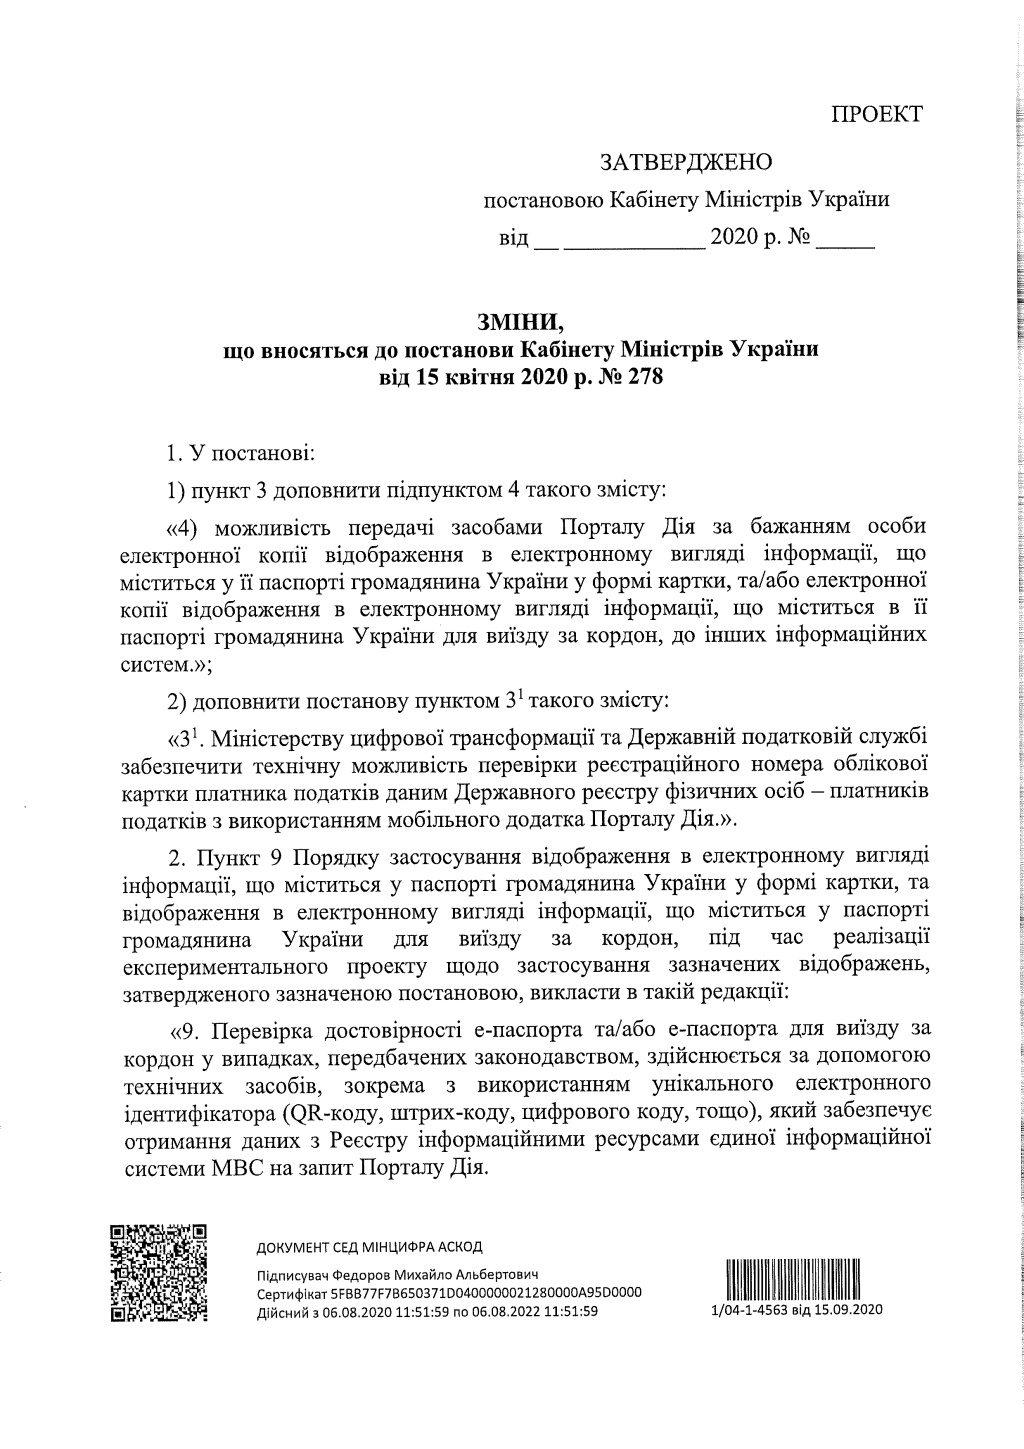 Кабінет міністрів України анонсував розширення можливостей е-паспорта через додаток ”Дія” - фото 3